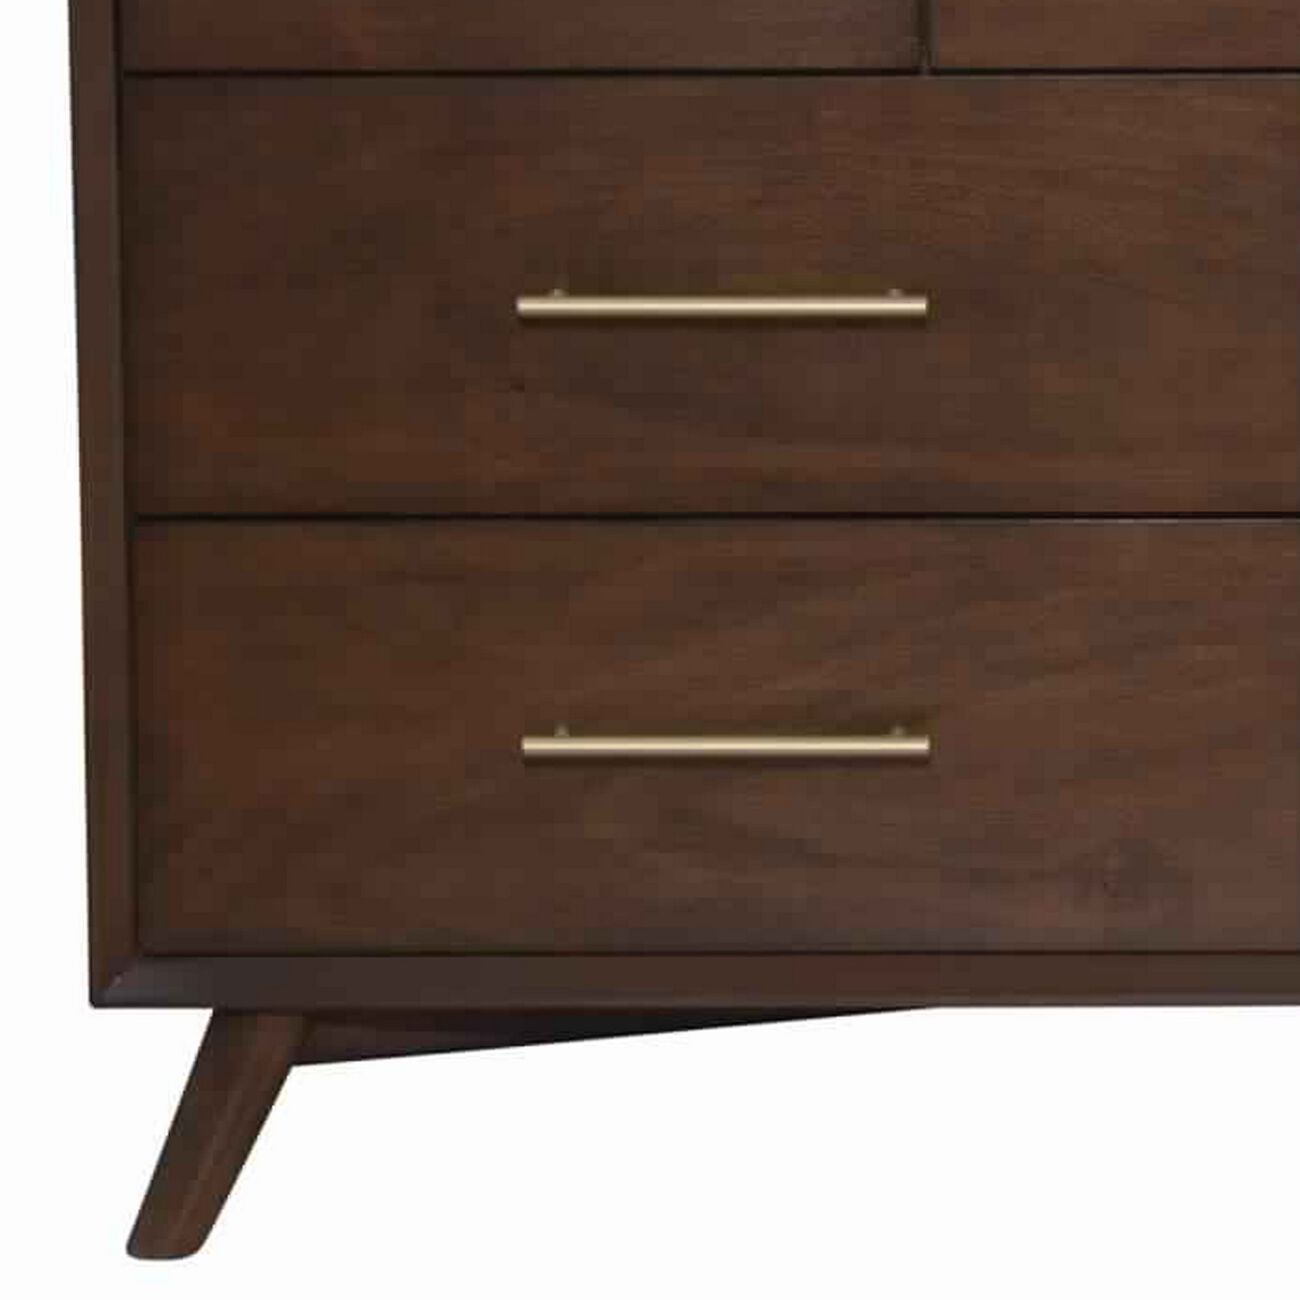 7 Drawer Mid Century Modern Wooden Dresser with Splayed Legs, Brown